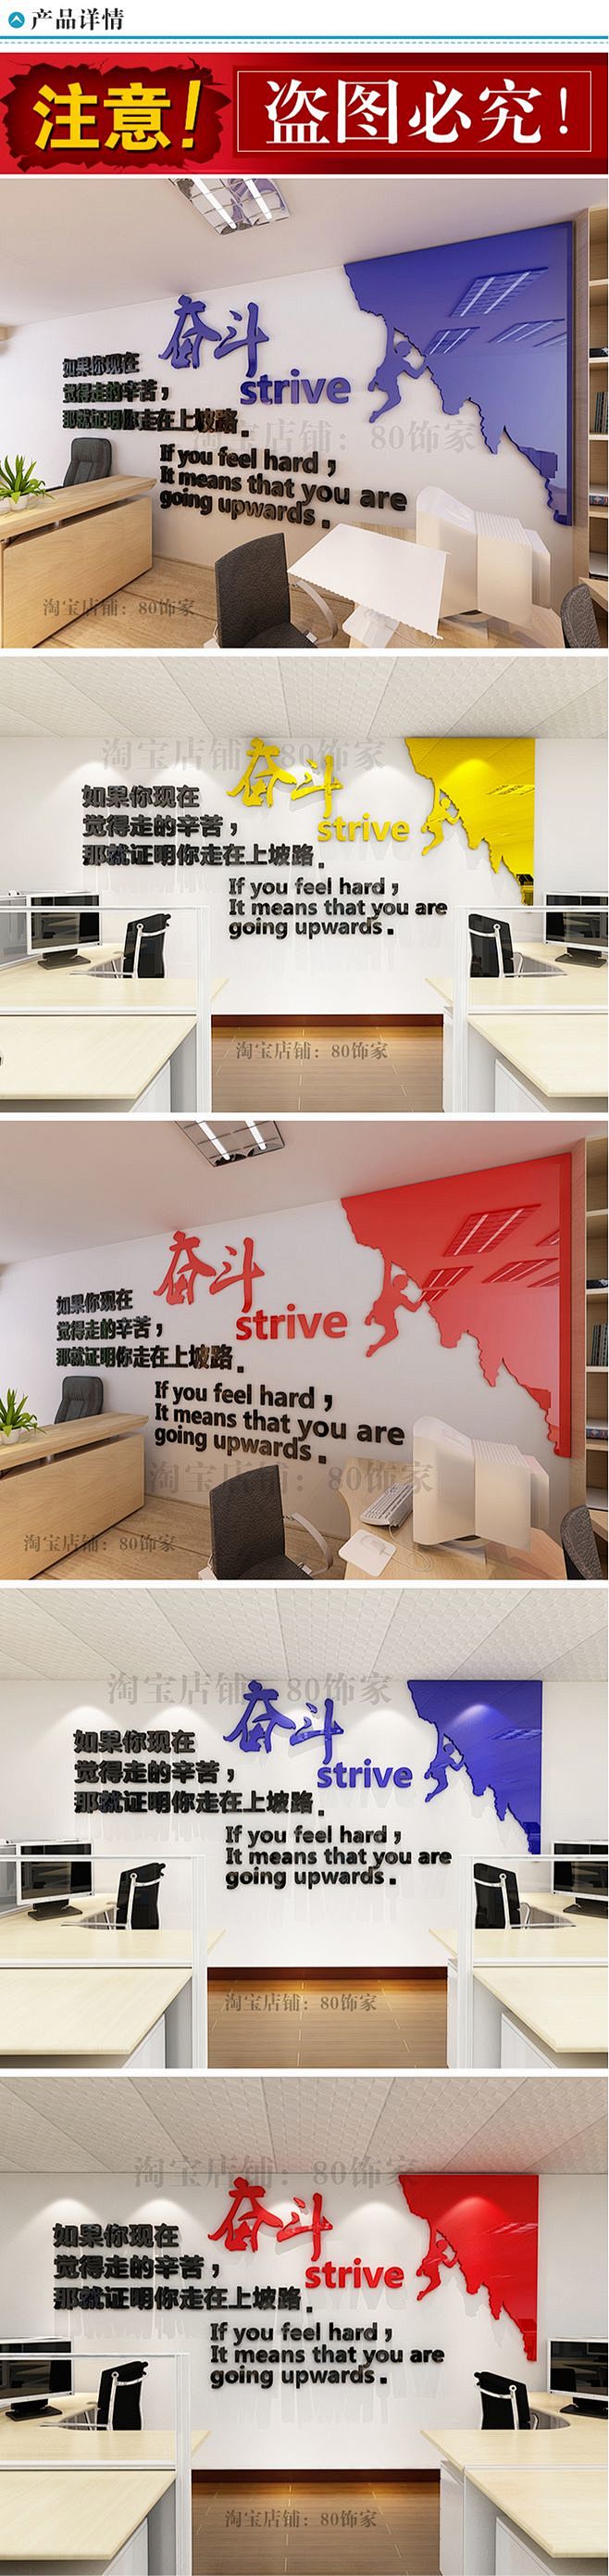 攀岩奋斗公司企业办公室文化装饰标语墙壁贴...